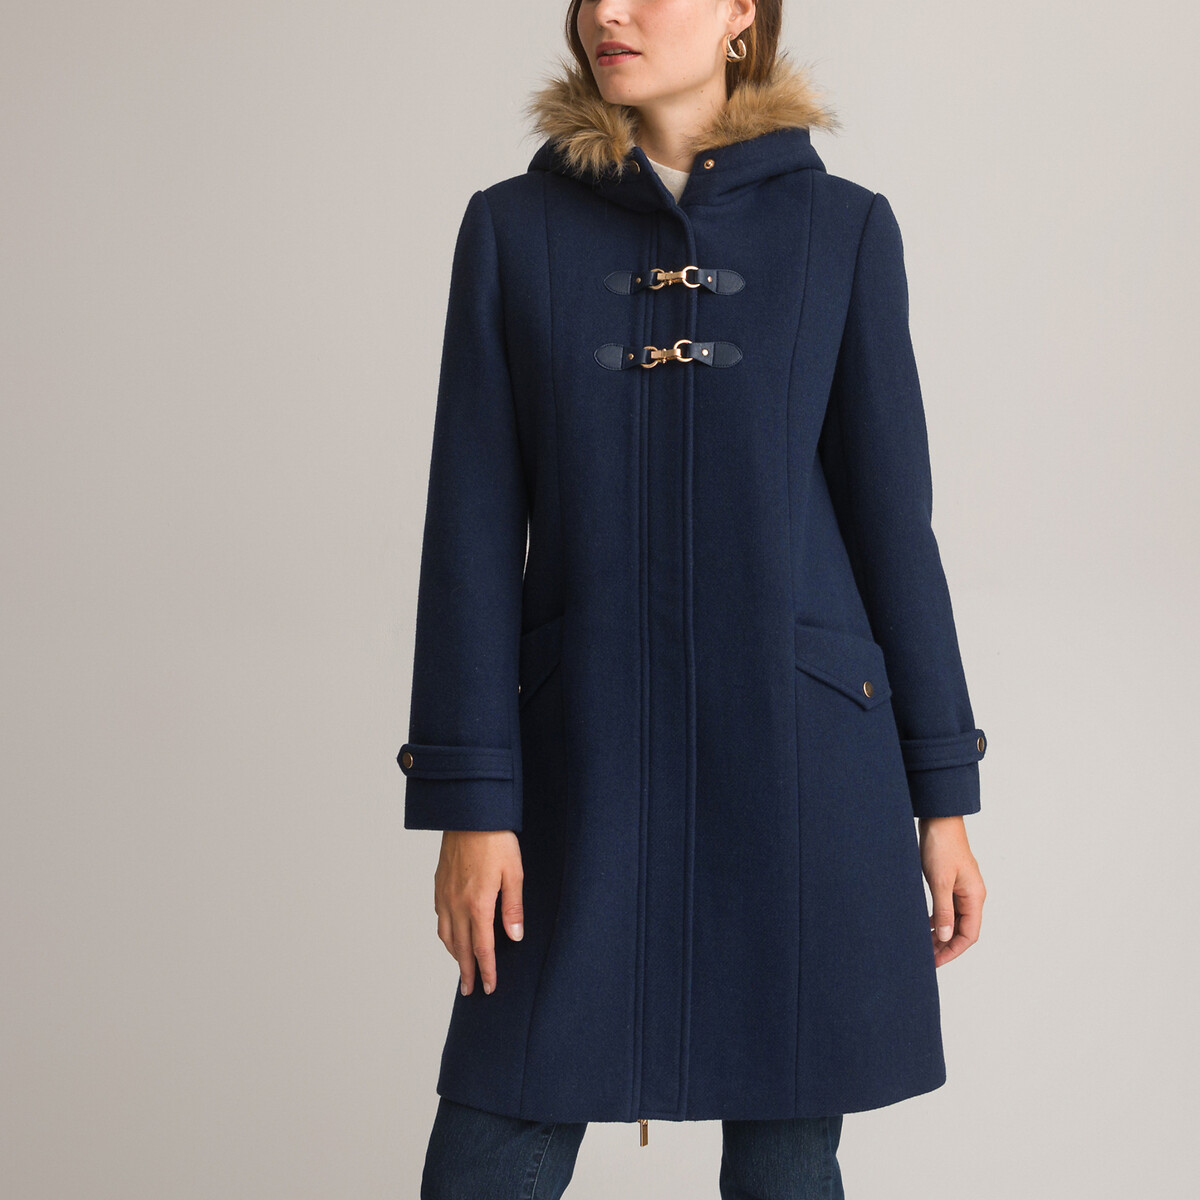 Пальто средней длины с капюшоном и застежкой на молнию  48 (FR) - 54 (RUS) синий LaRedoute, размер 48 (FR) - 54 (RUS)